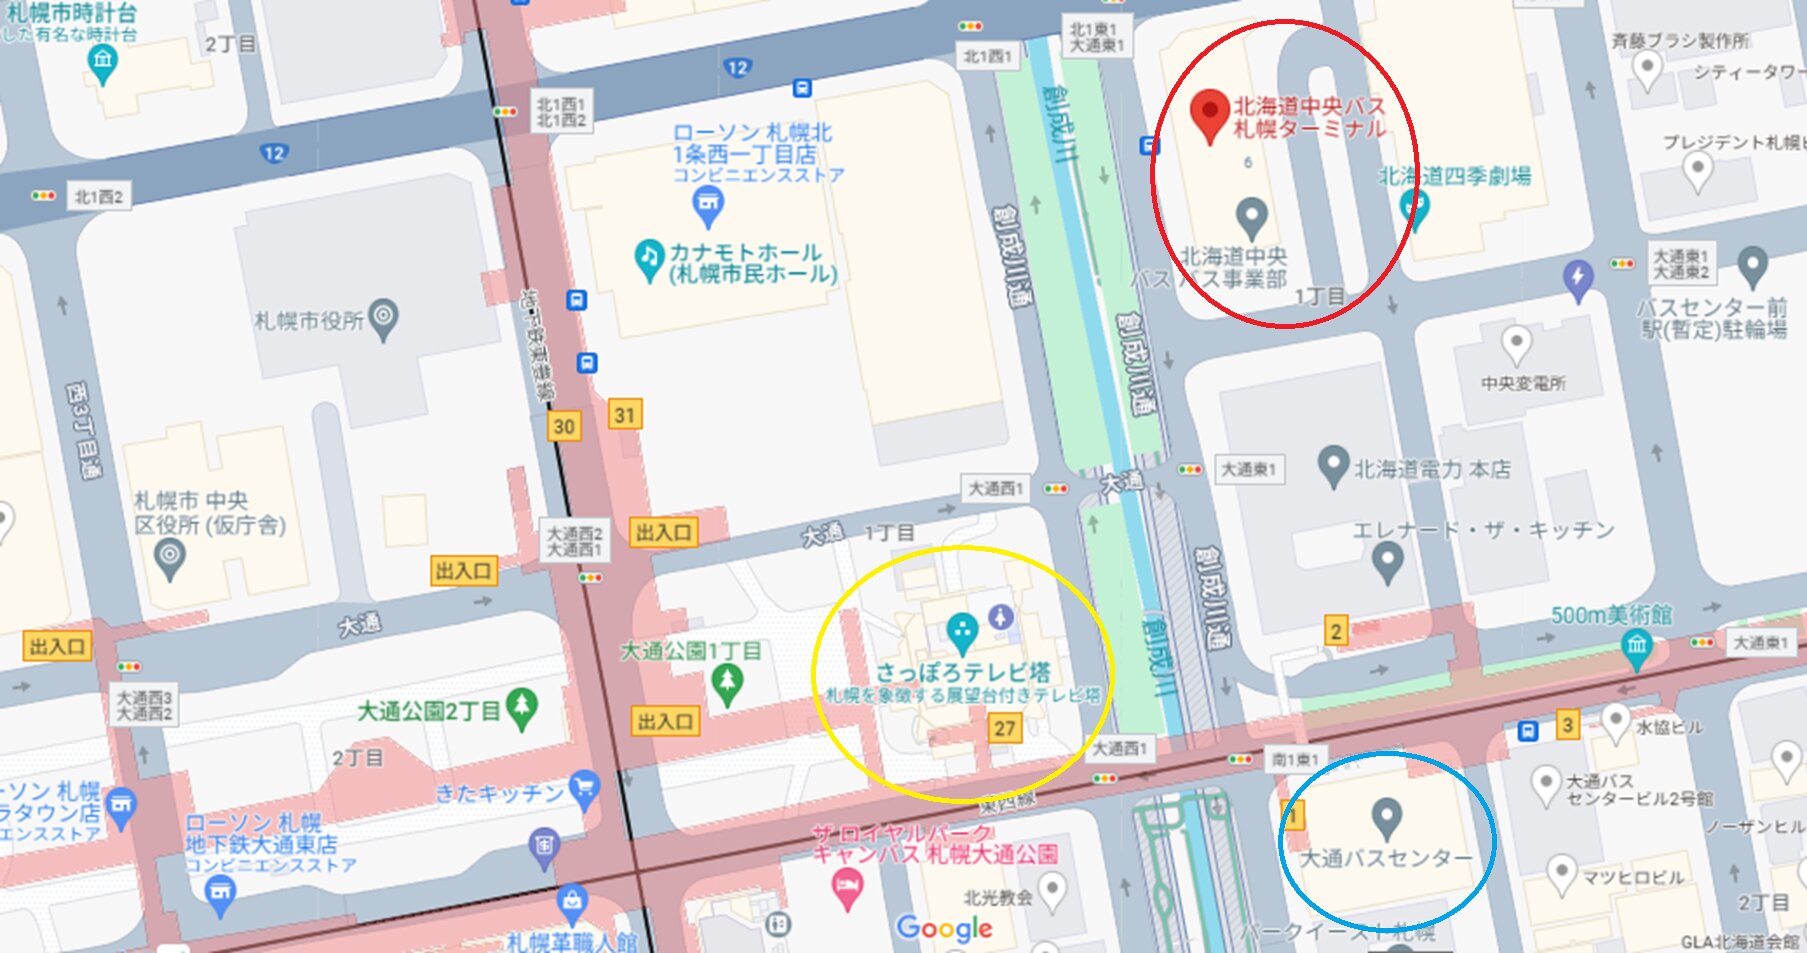 大通バスセンター(青)と中央バス札幌ターミナル(赤)　(C)Google